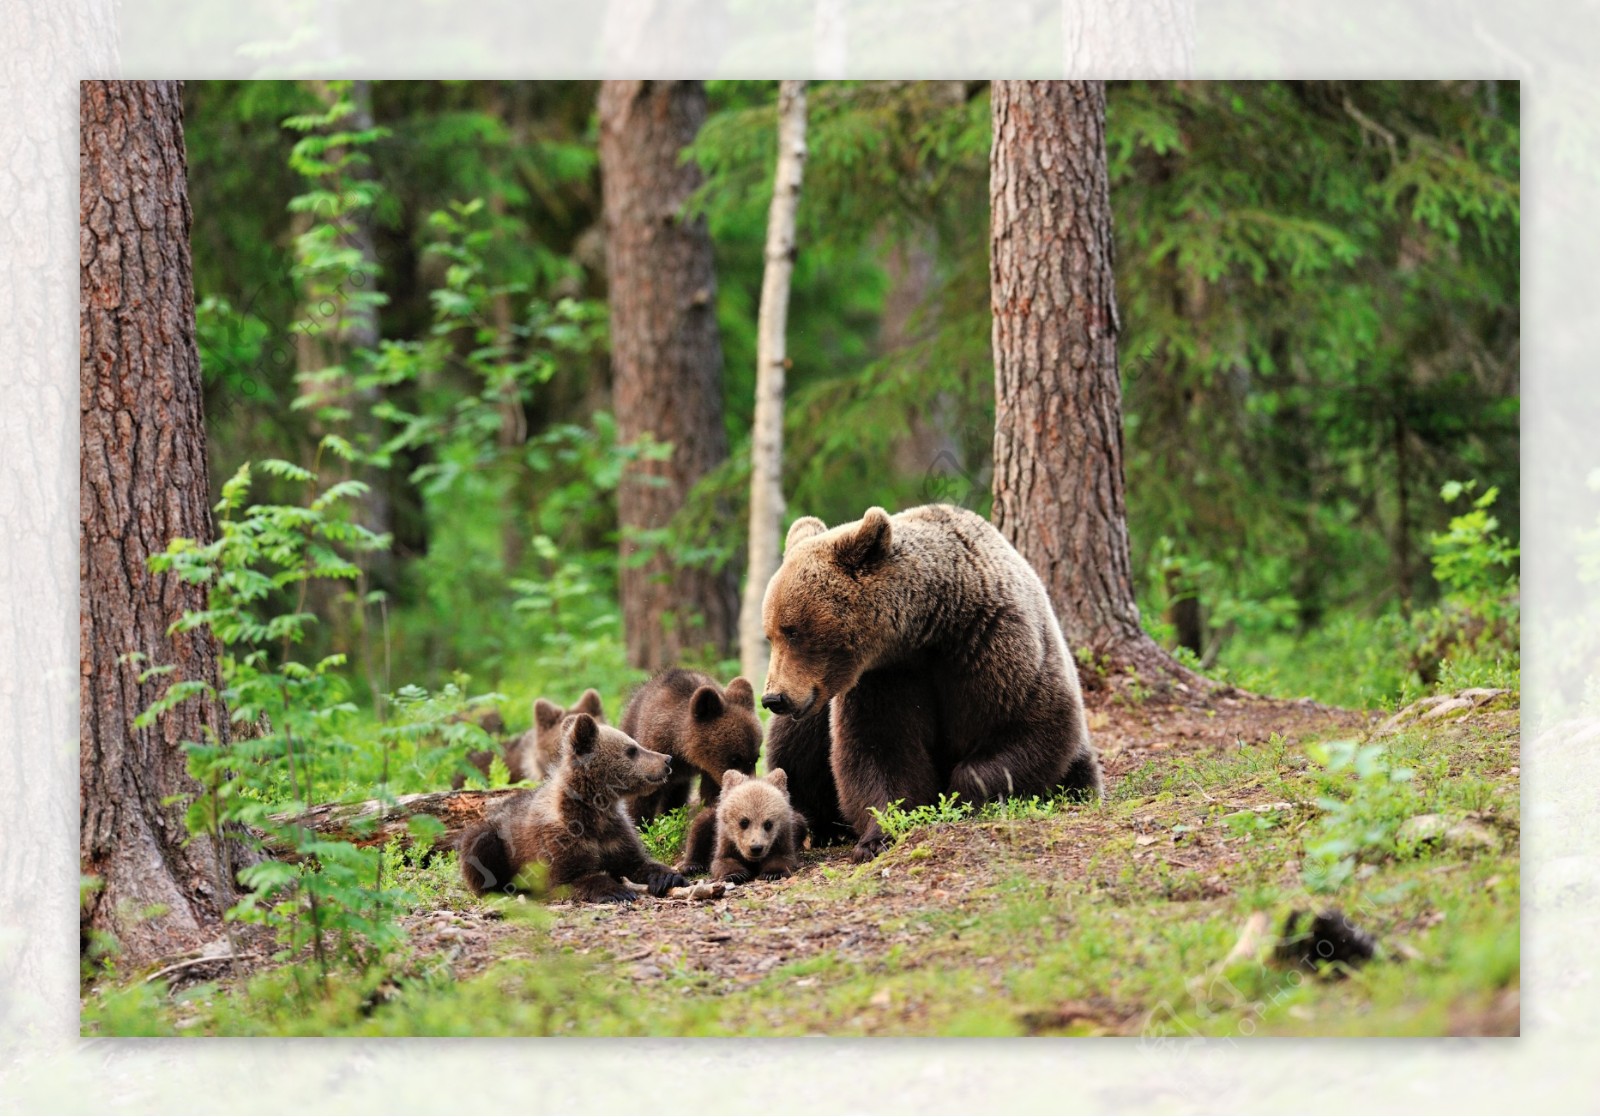 树林里的熊与小熊图片